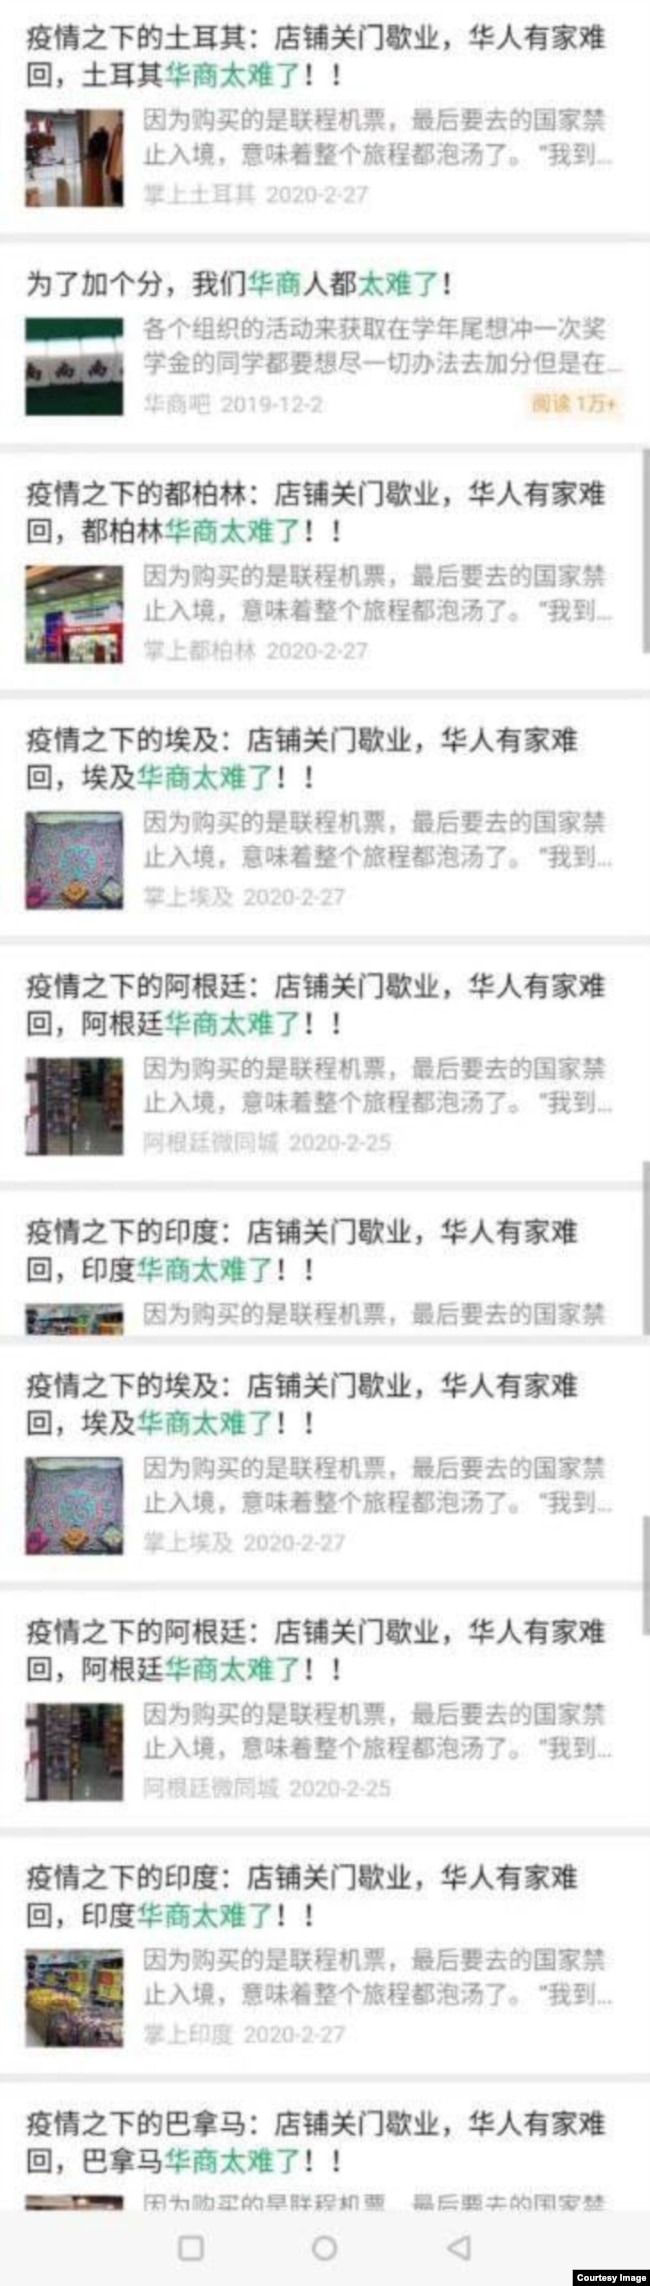 海外华人社交媒体关于新冠肺炎疫情的贴文截屏(沈伯洋提供）